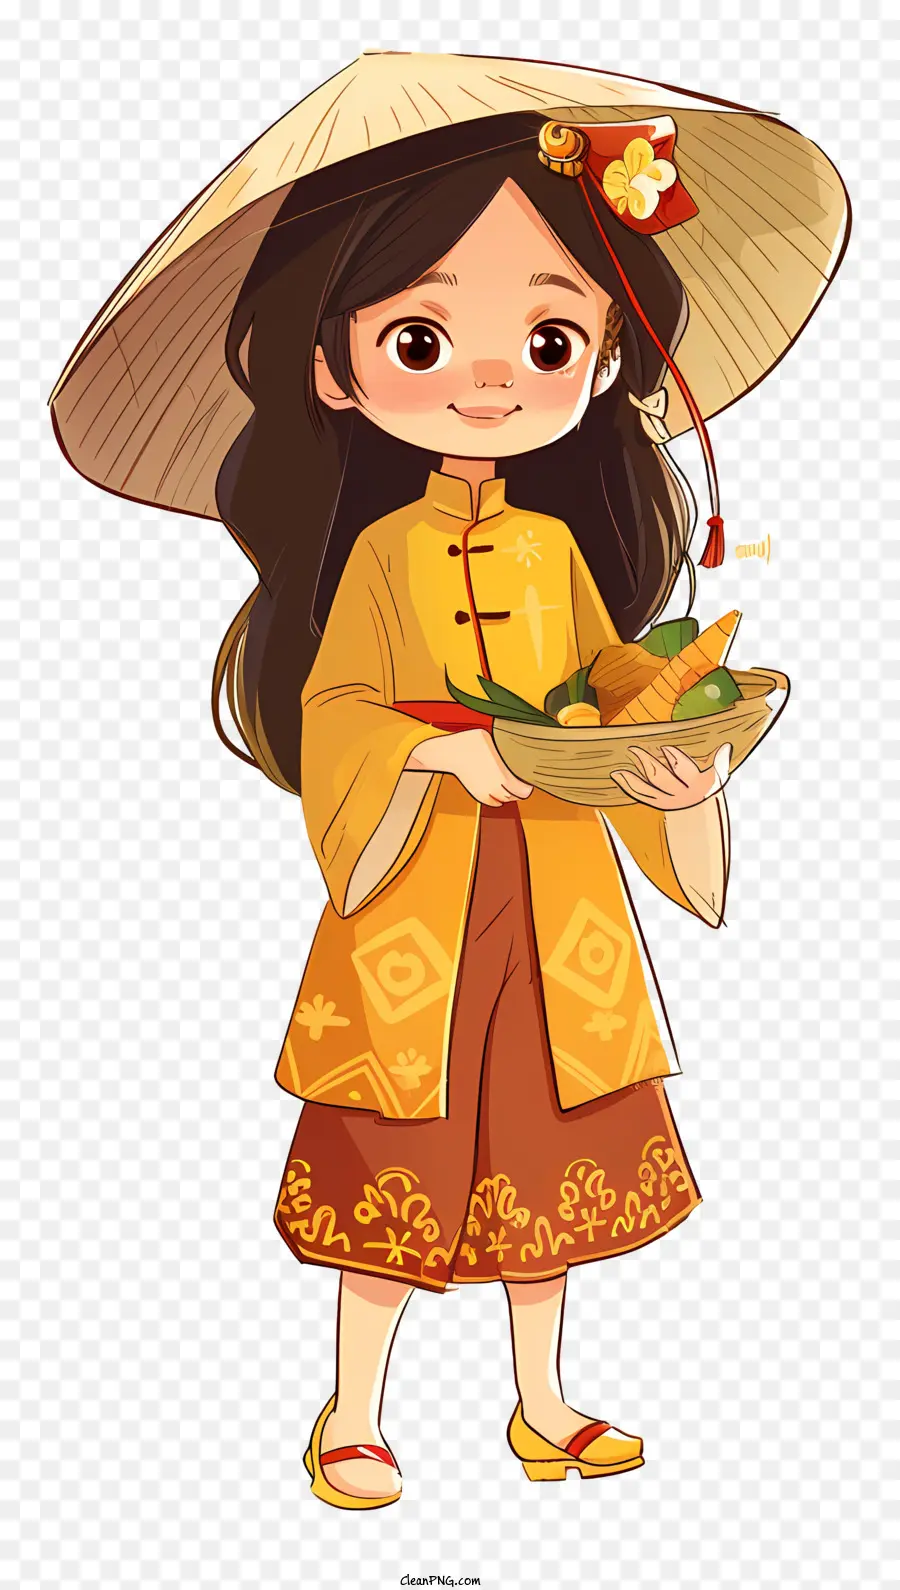 ragazza vietnamita costume orientale tradizionale cultura asiatica pasti tradizionali cucina asiatica - Giovane donna in costume orientale tiene la ciotola del cibo